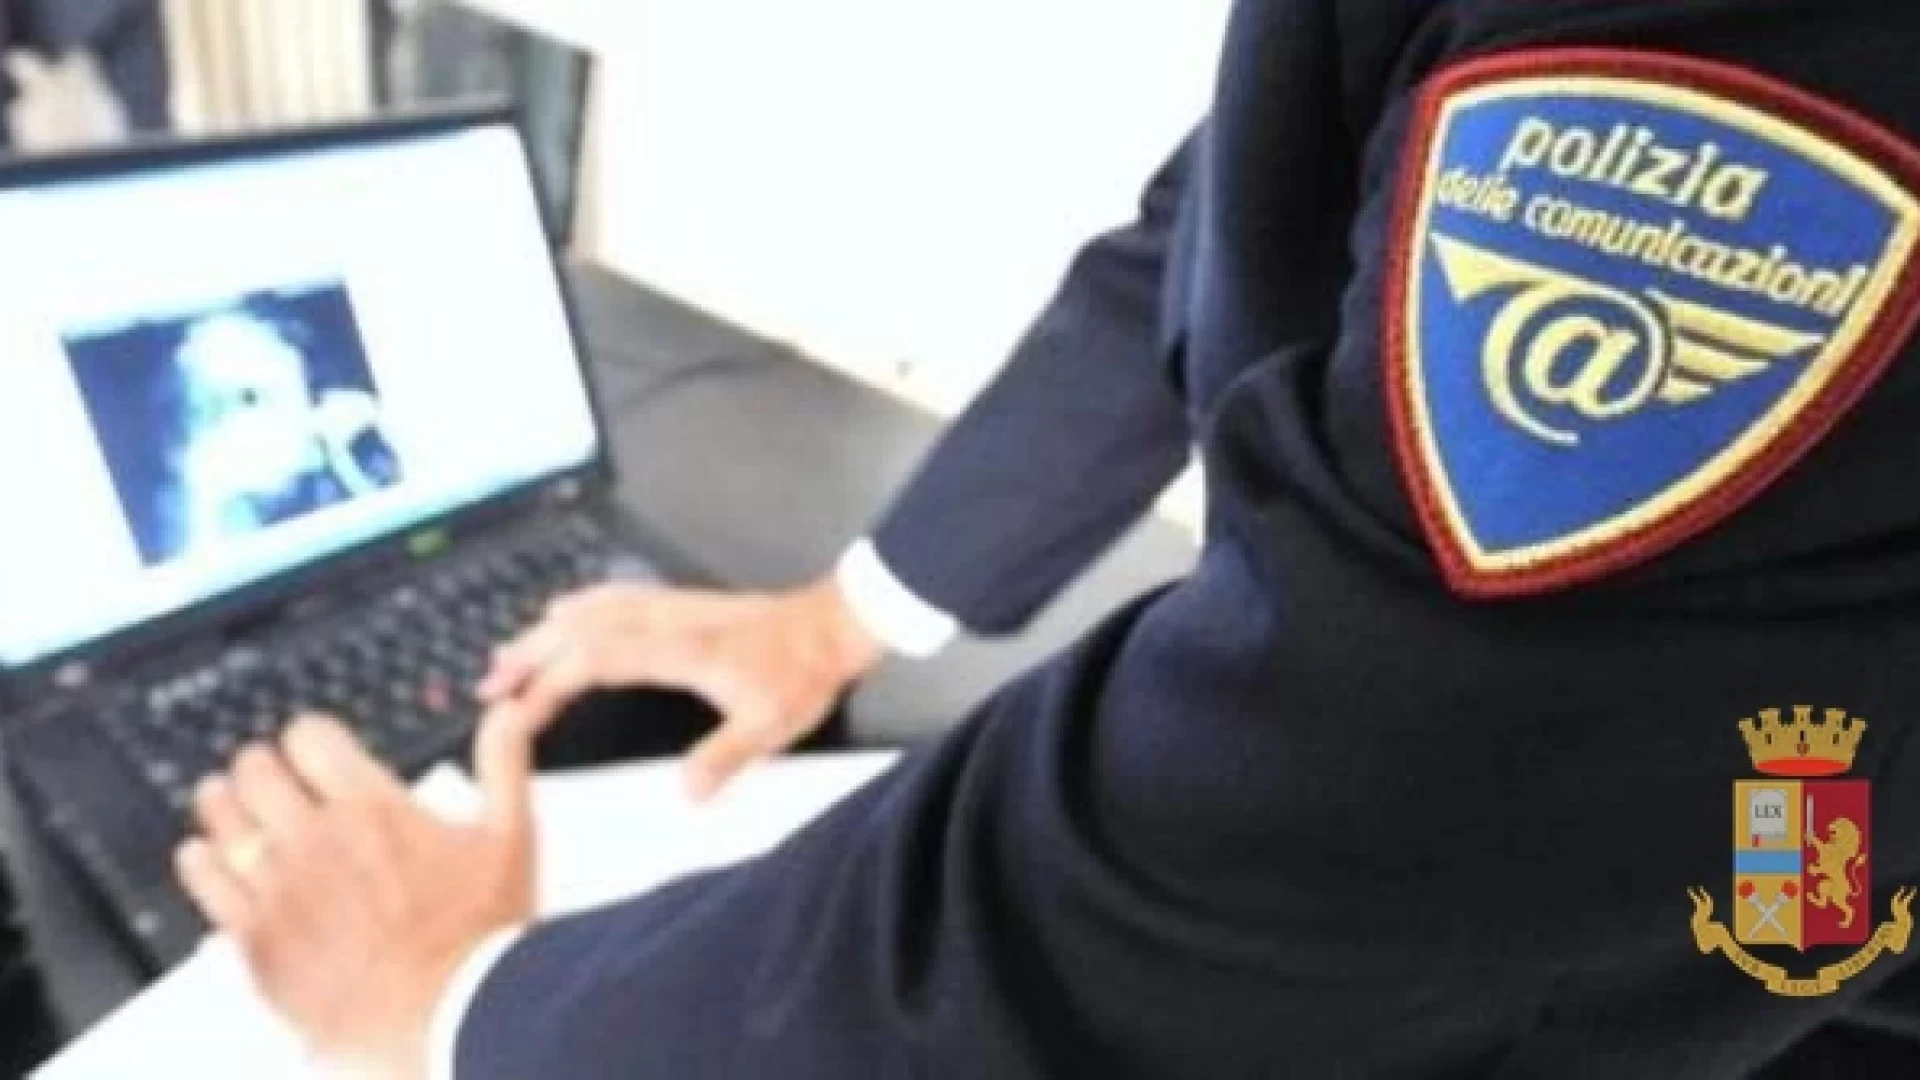 Isernia: I consigli della Polizia Postale per gli acquisti in rete